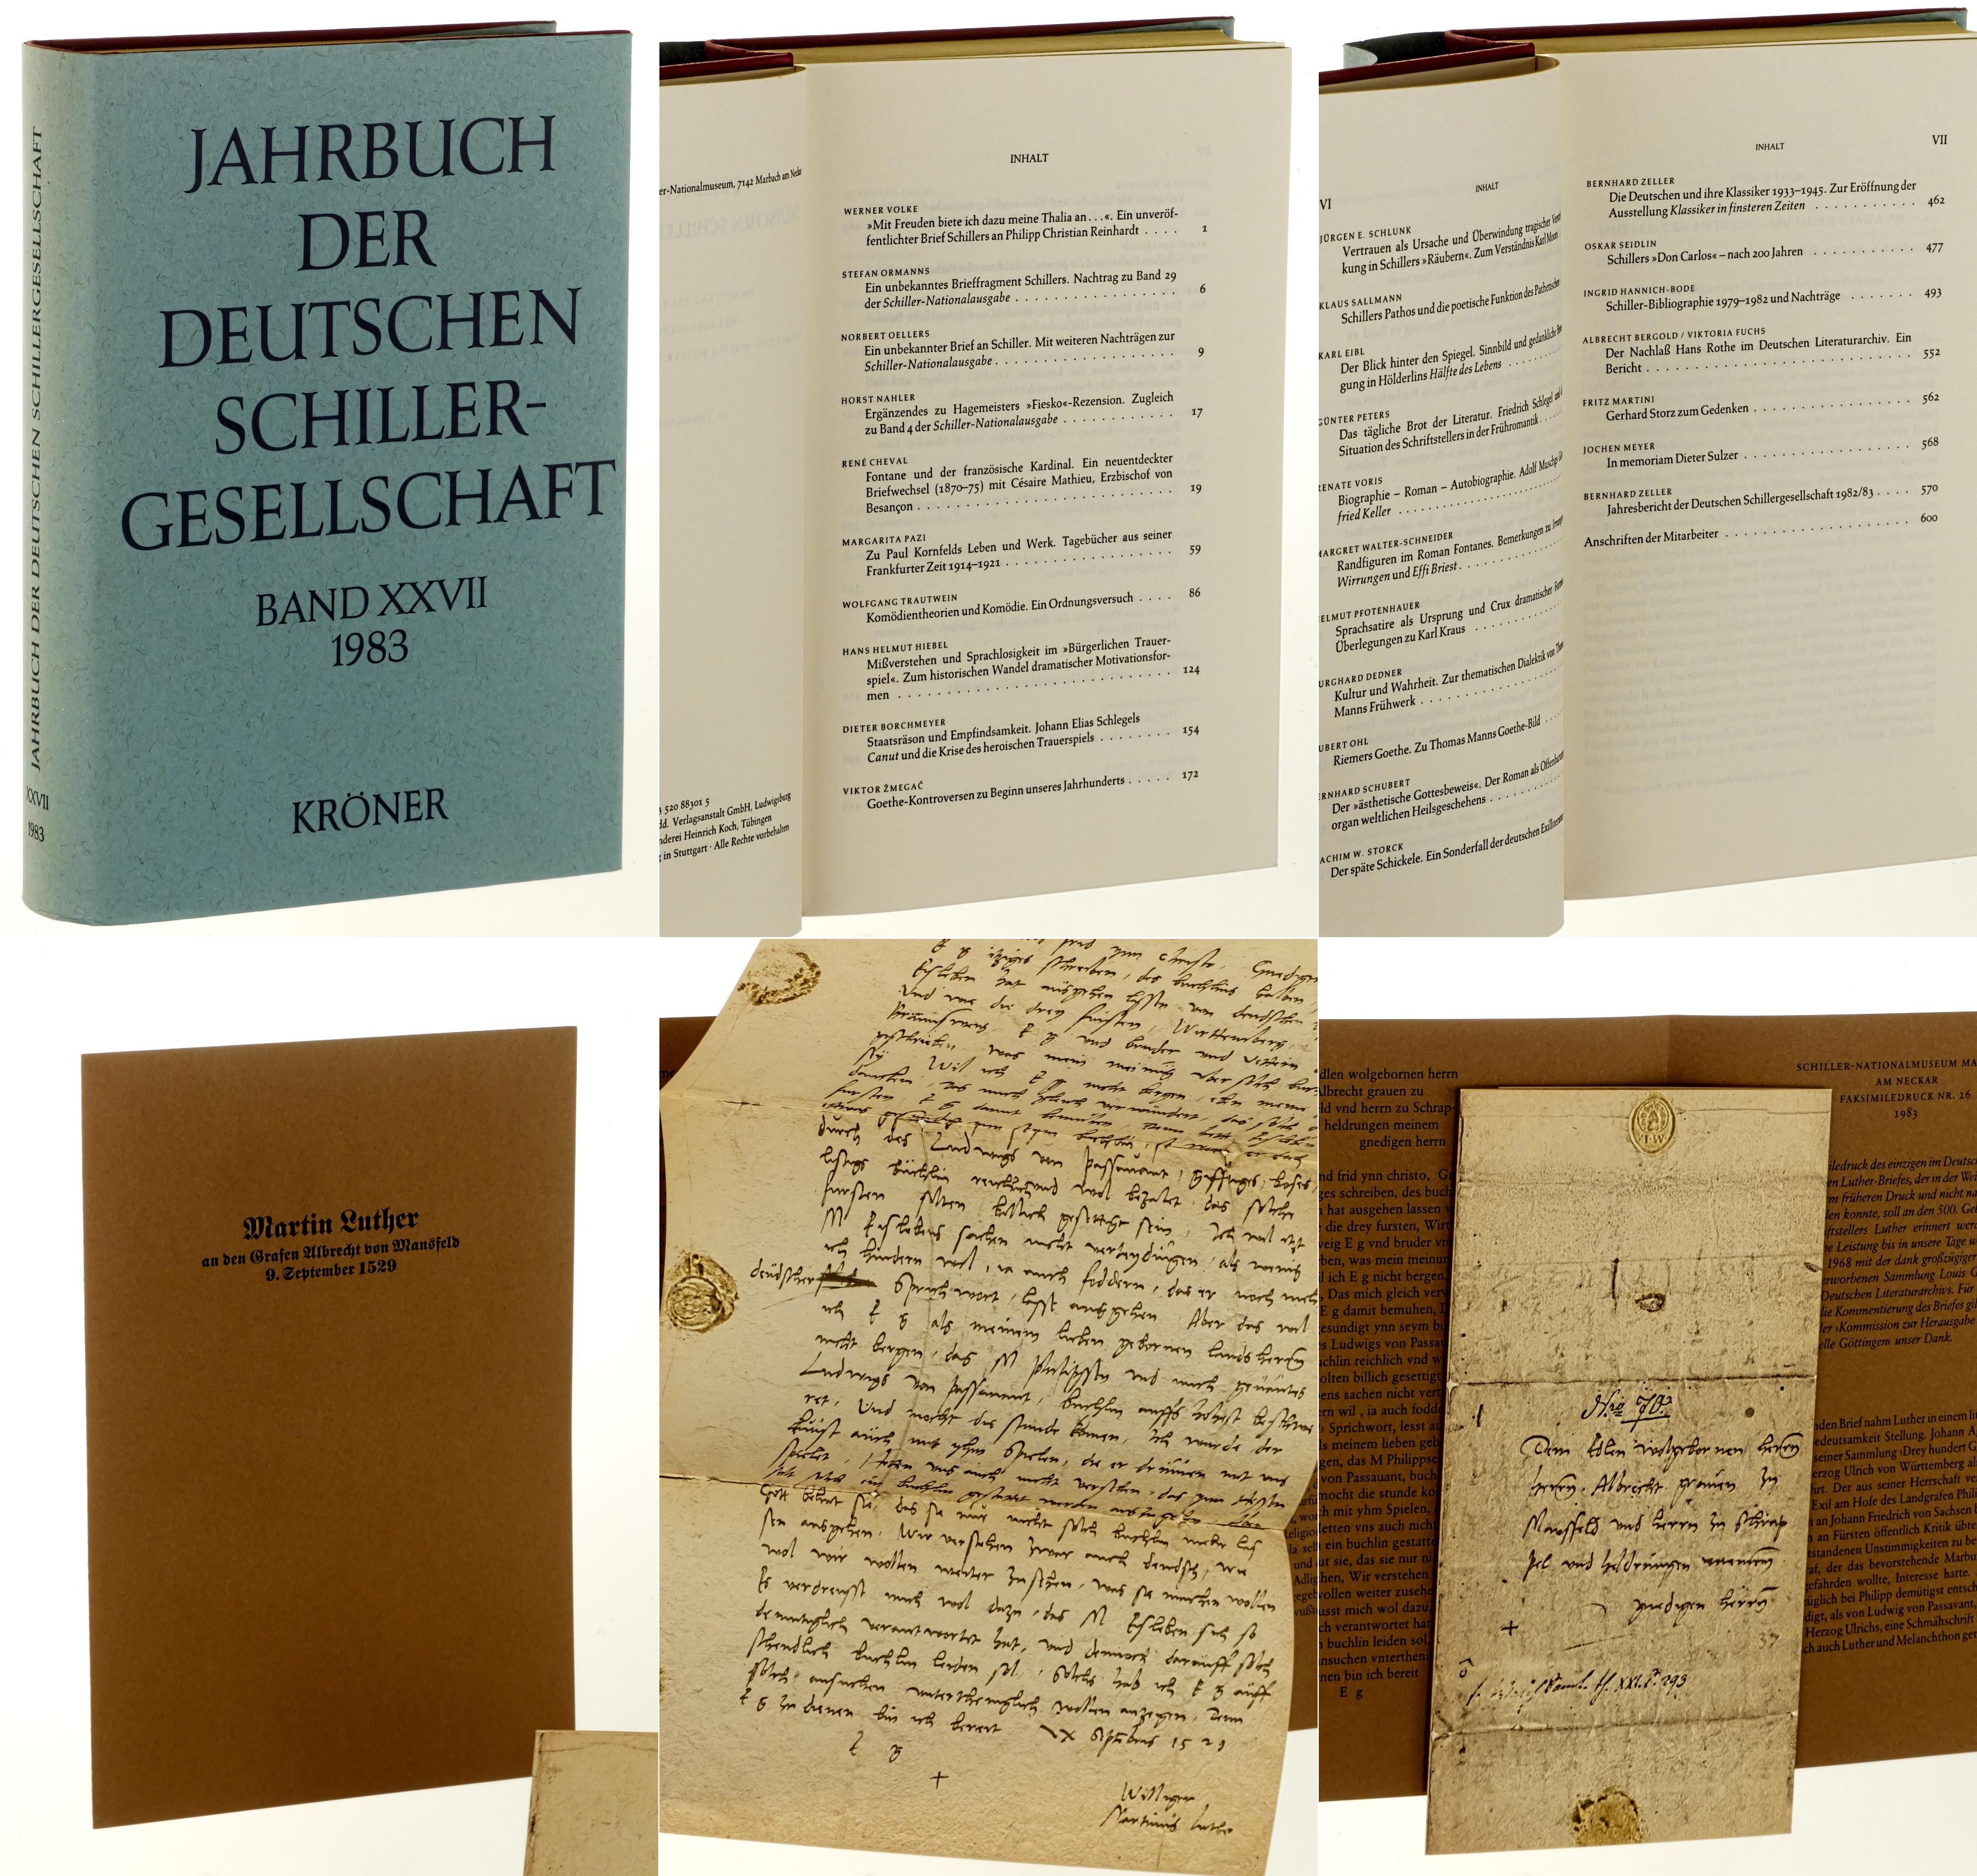   Jahrbuch der Deutschen Schillergesellschaft. 